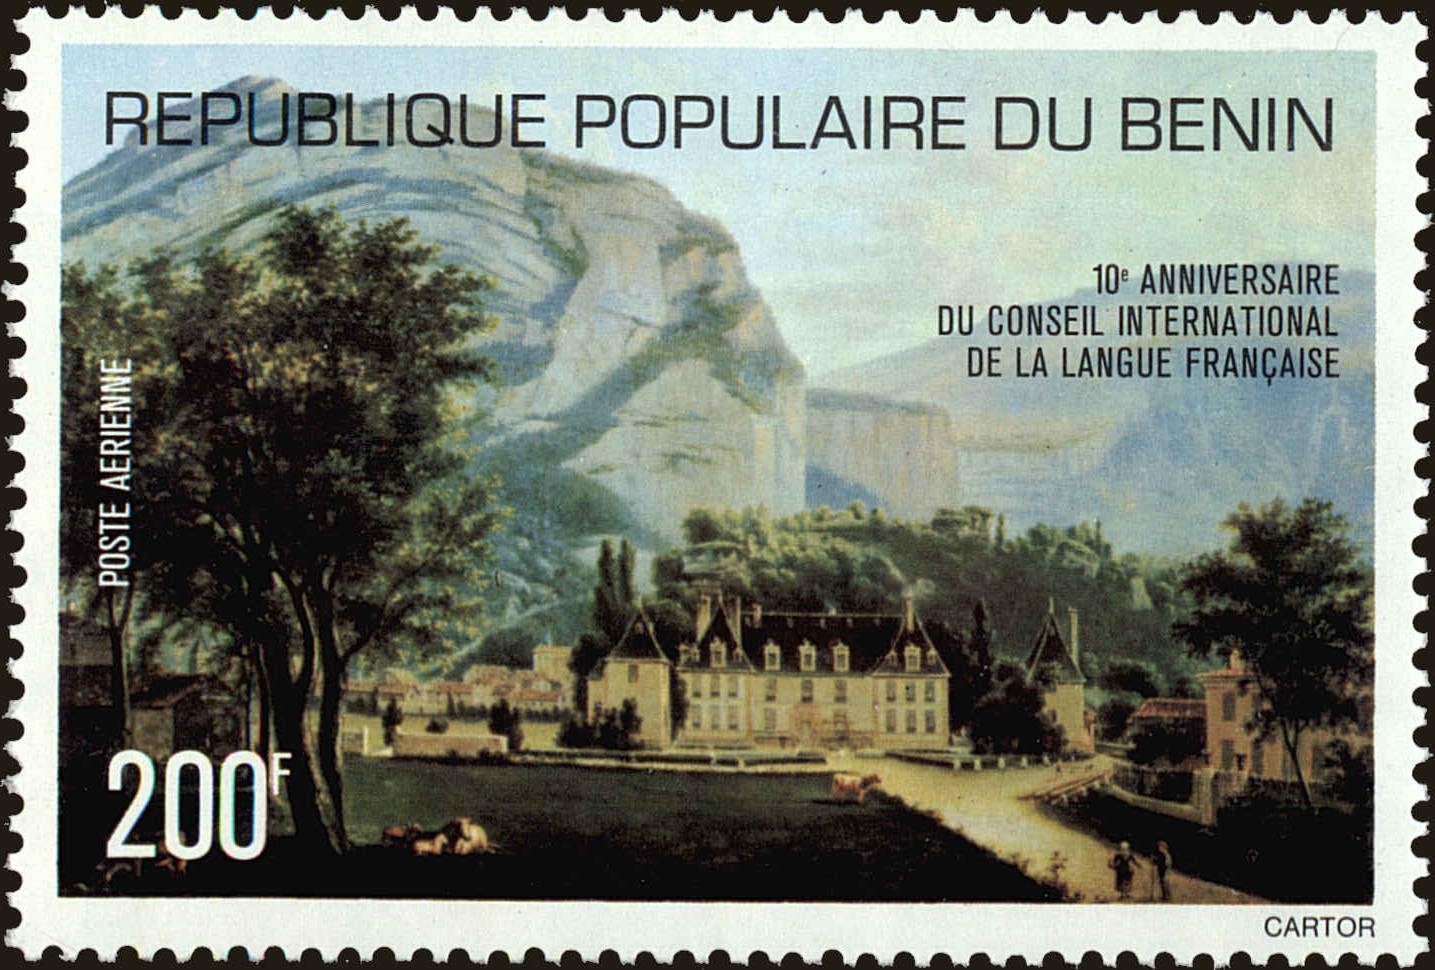 Front view of Benin C264 collectors stamp